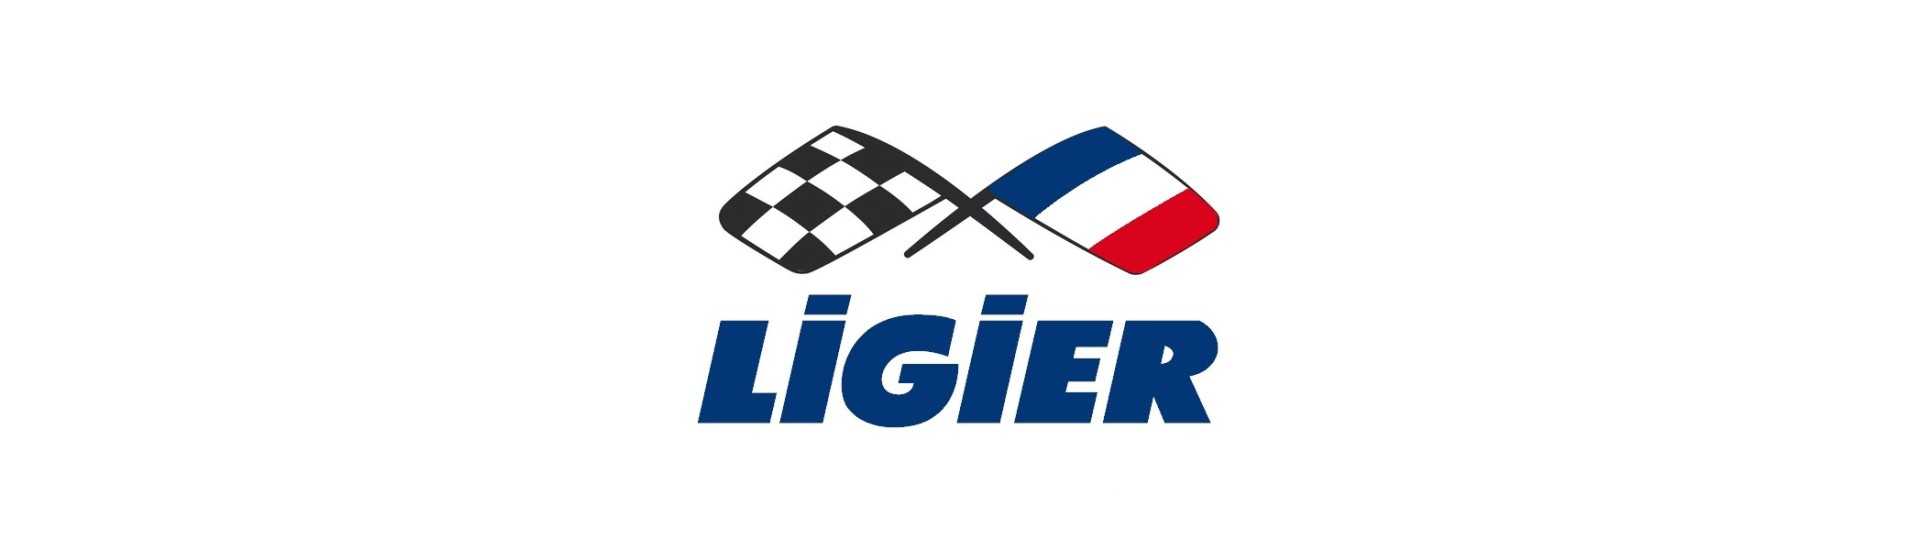 Catadioptre ao melhor preço para o carro sem uma permissão Ligier